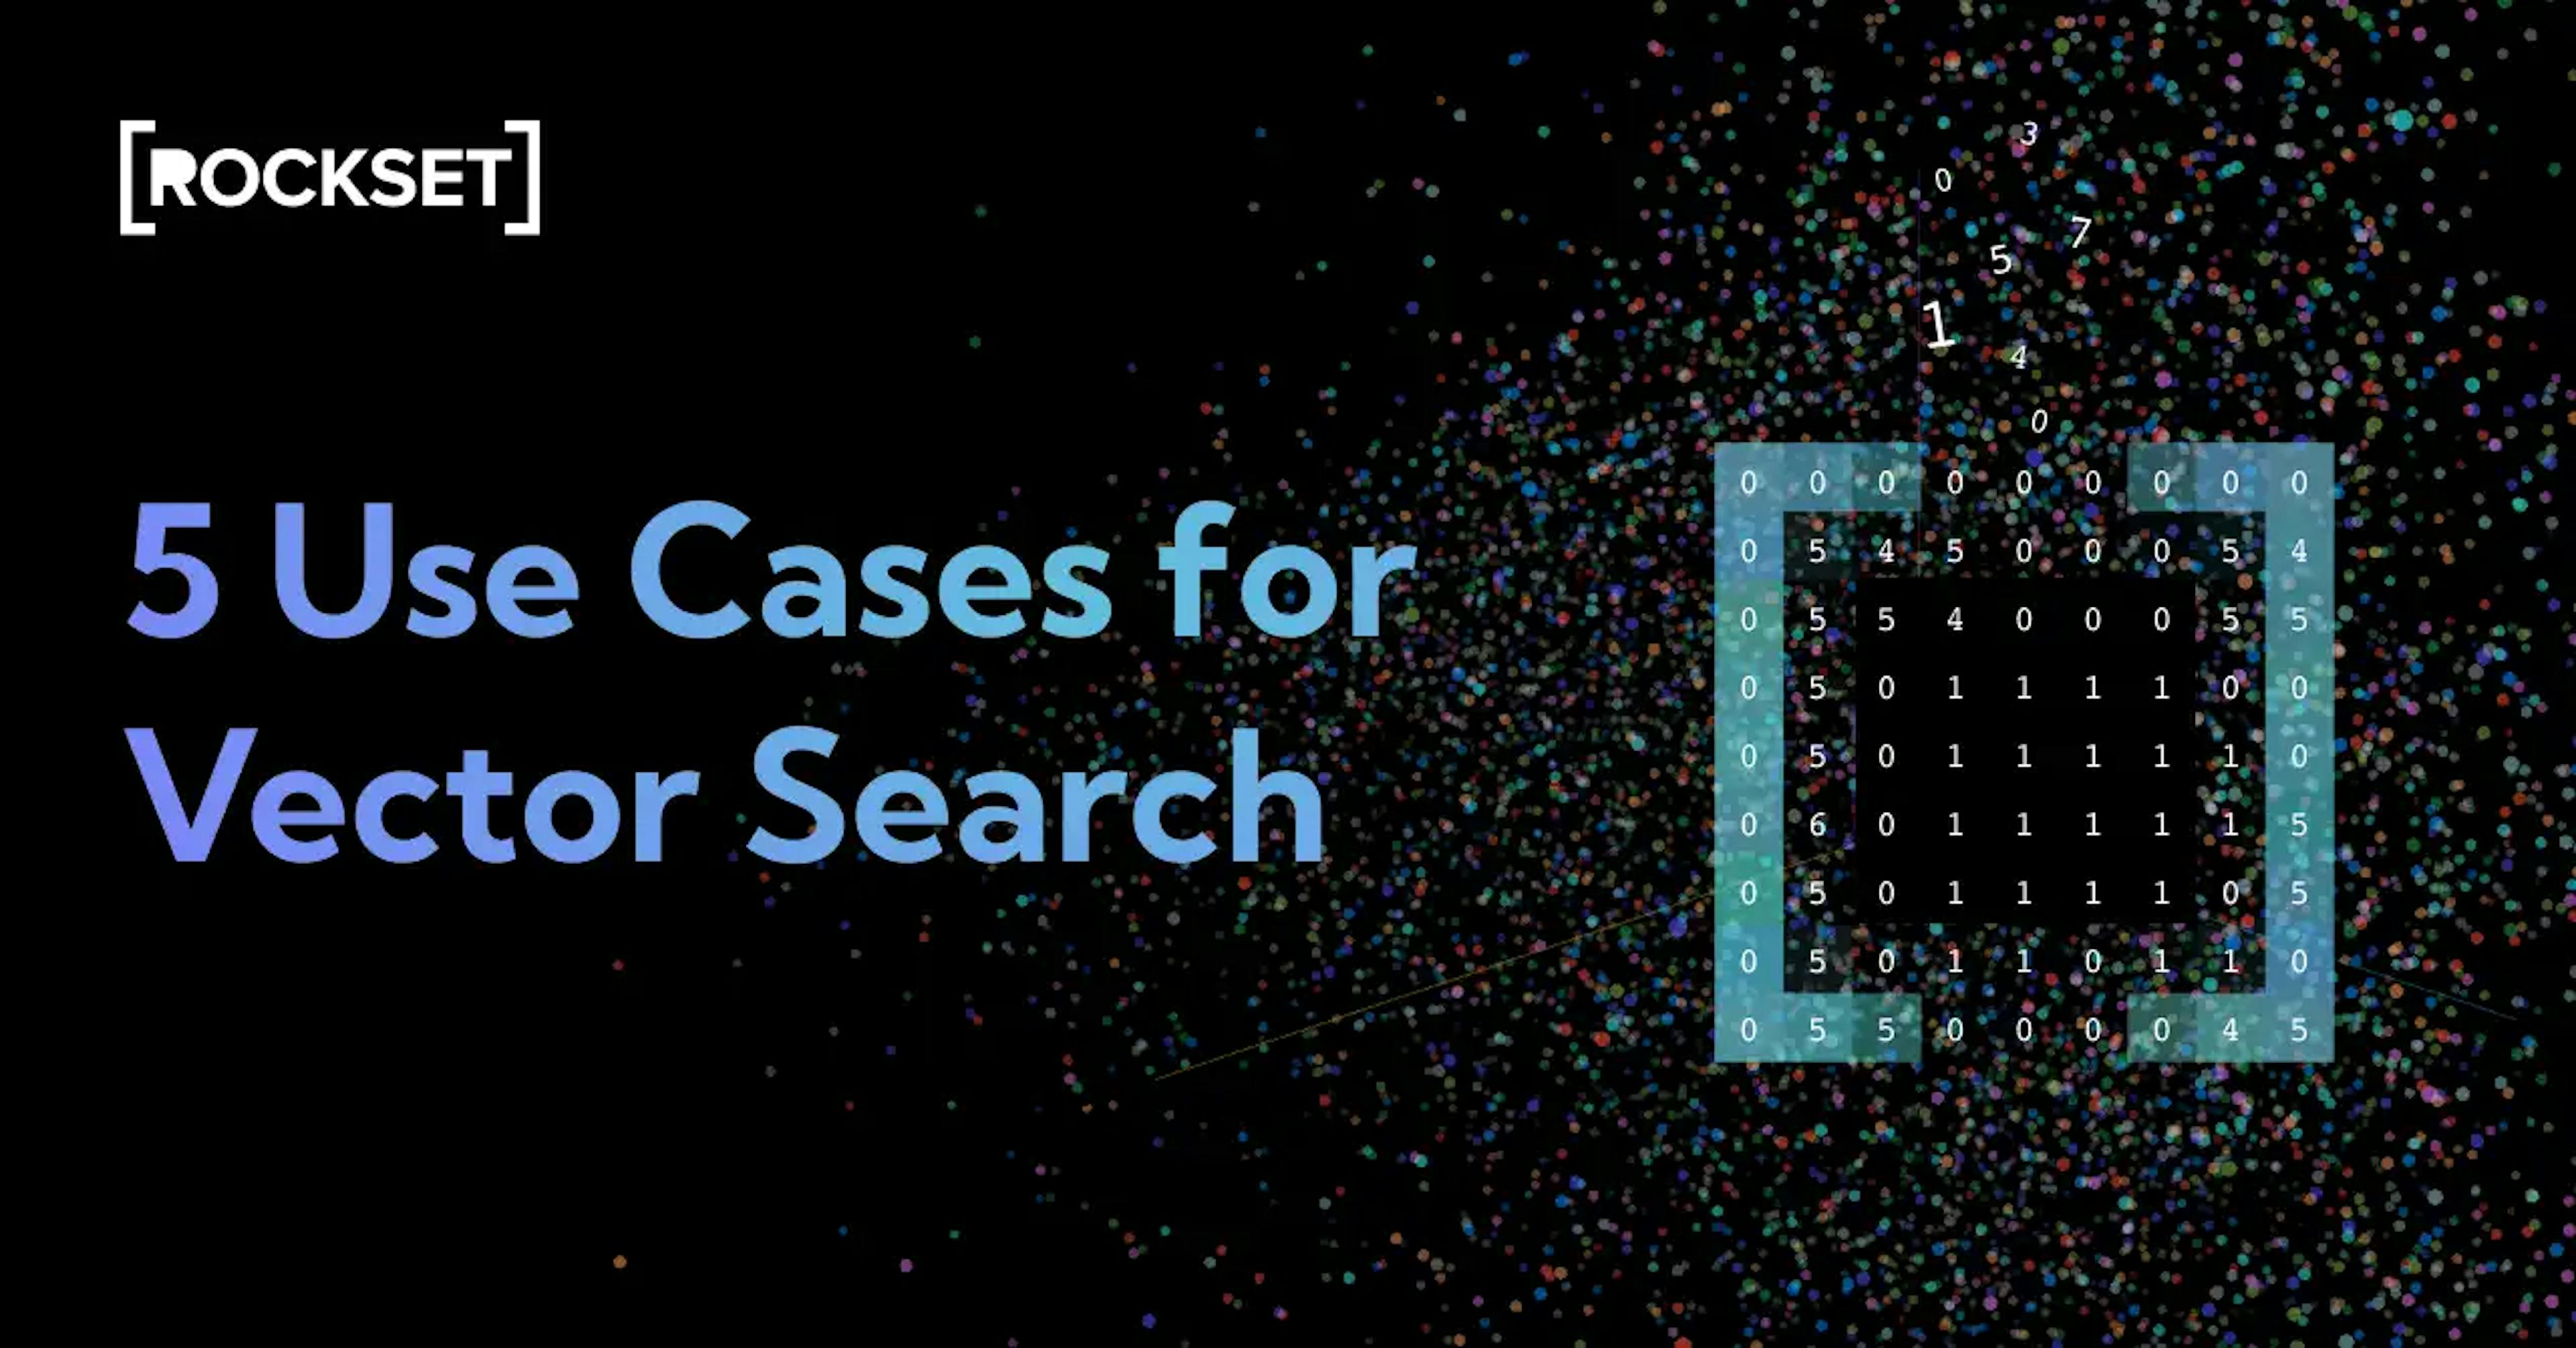 featured image - Xem xét 5 trường hợp sử dụng tìm kiếm vectơ từ các công ty công nghệ lớn